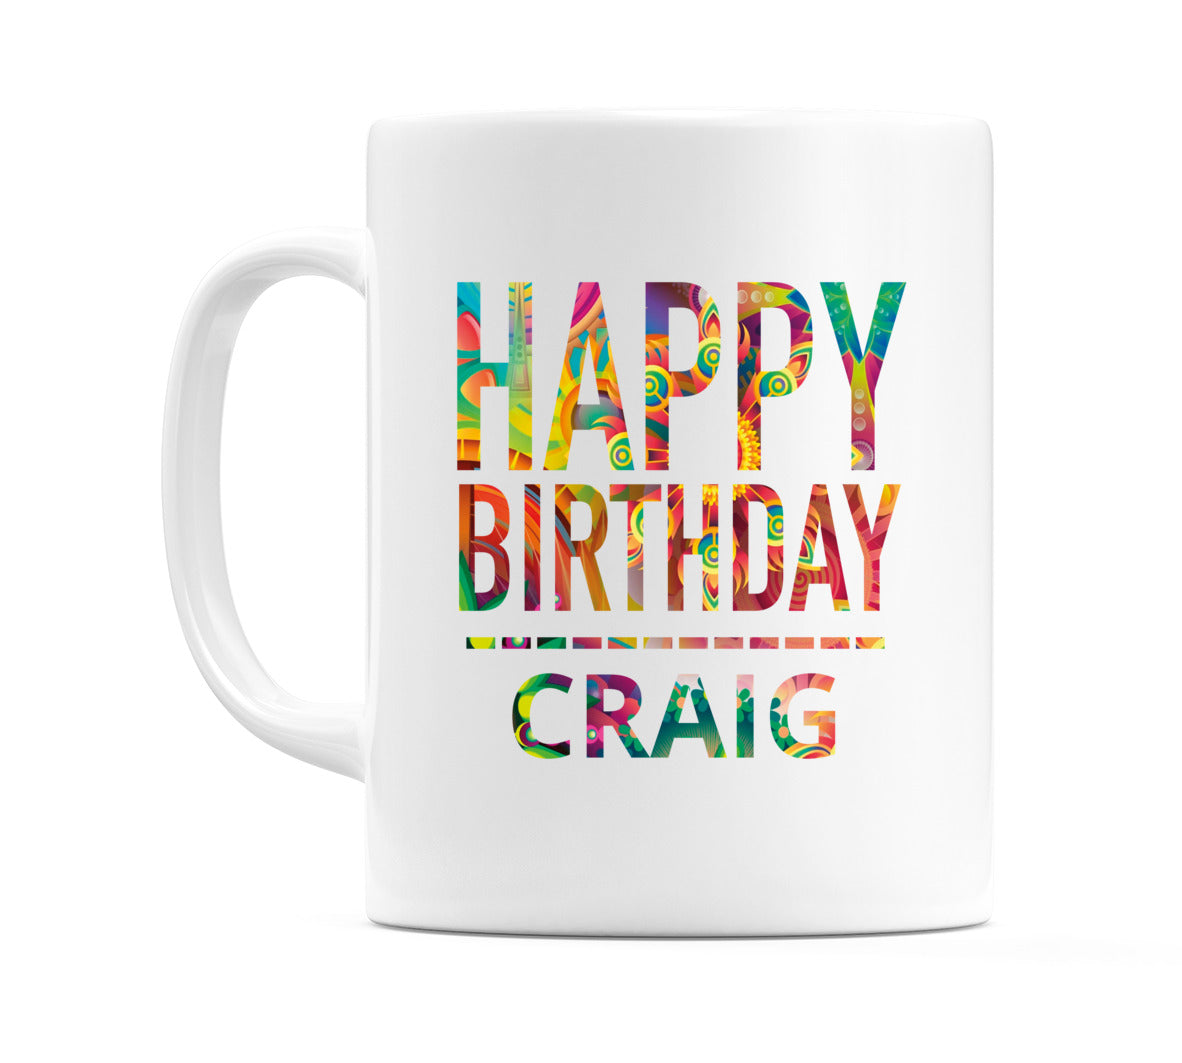 Happy Birthday Craig (Tie Dye Effect) Mug Cup by WeDoMugs